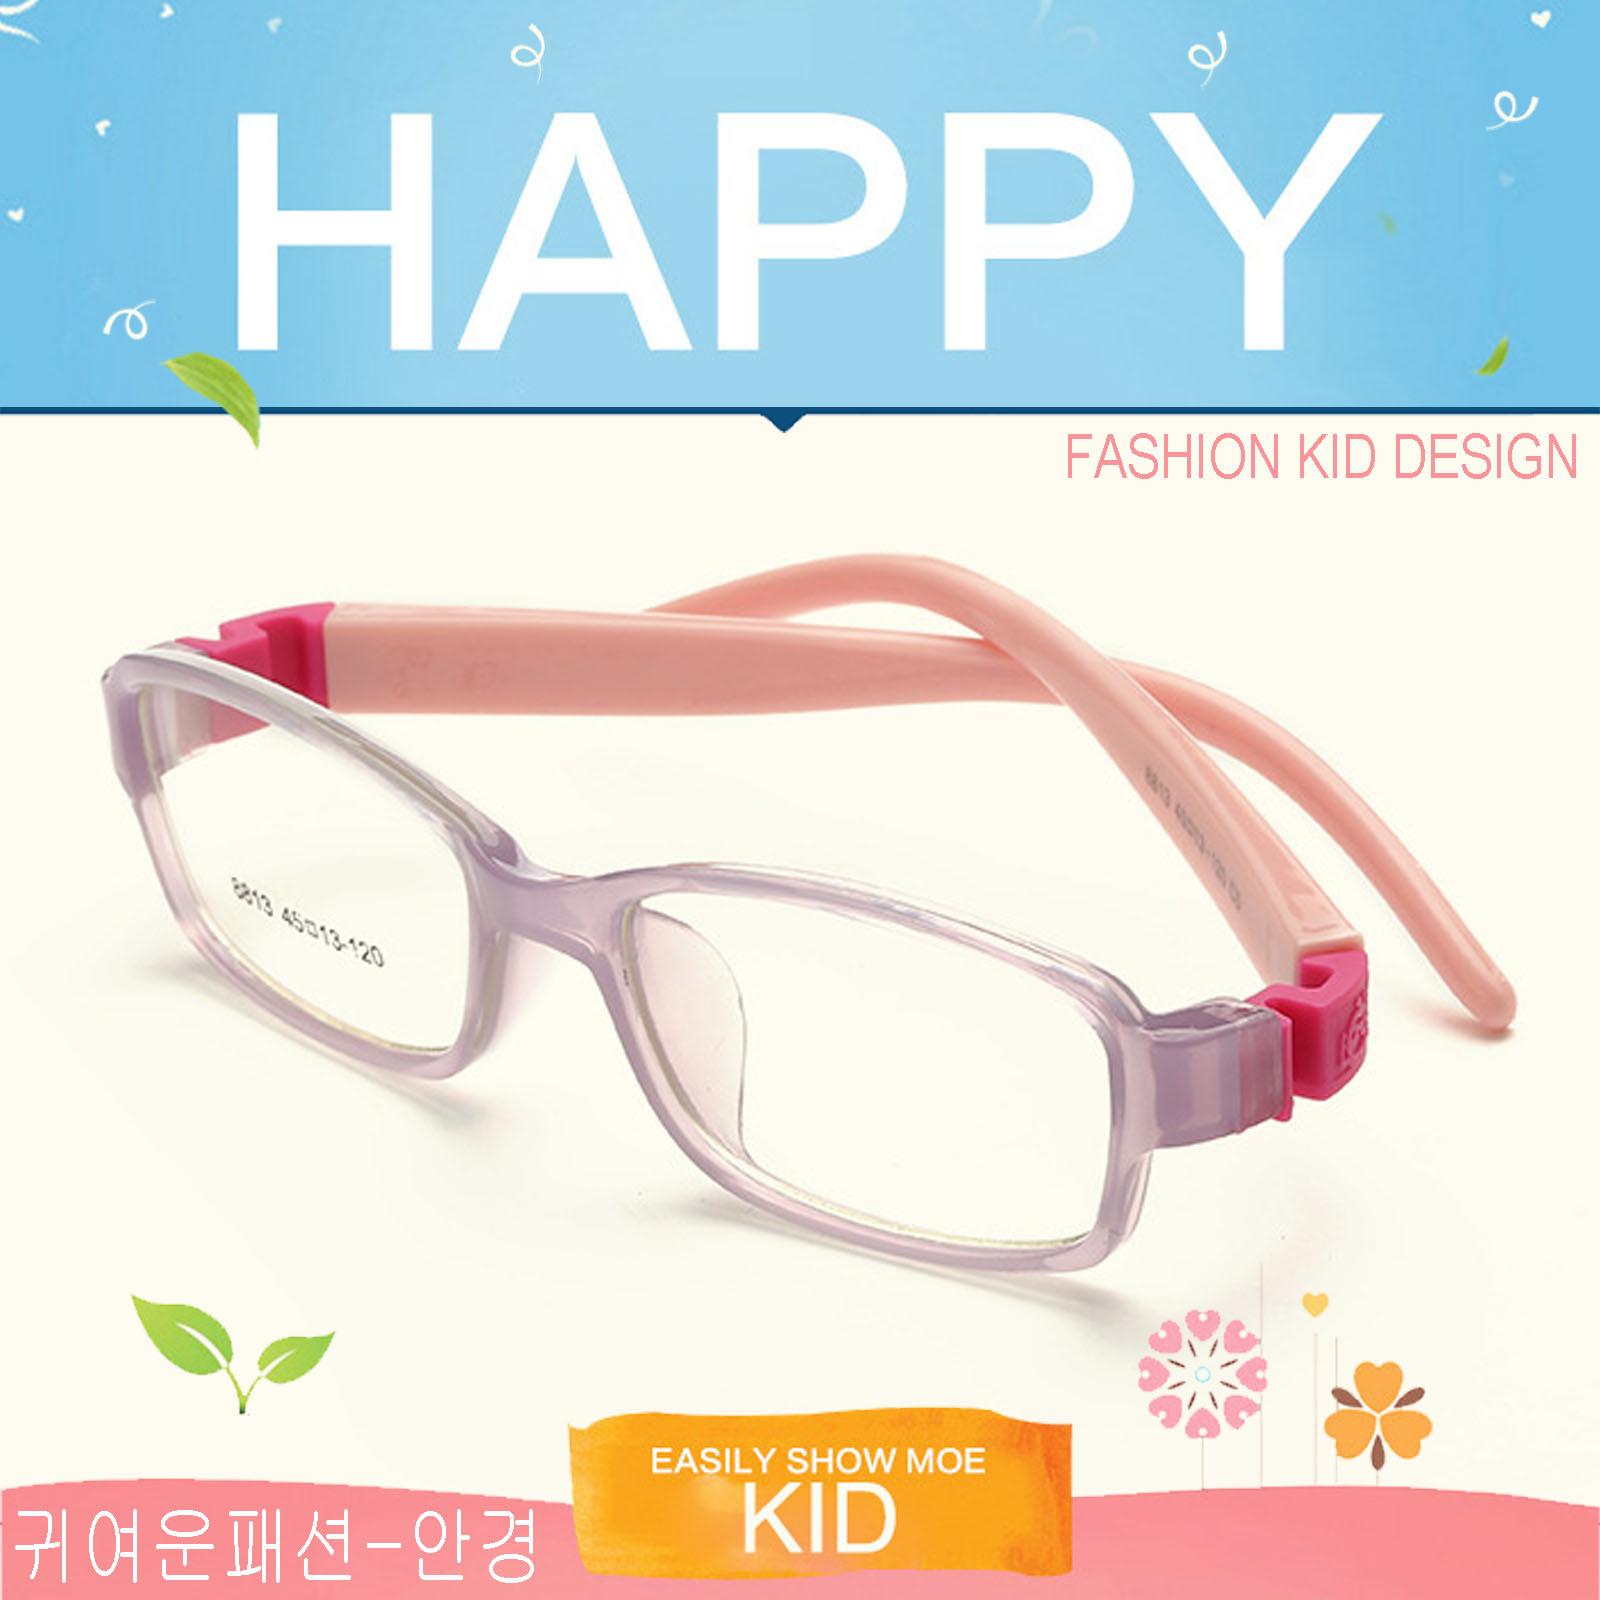 แว่นตาเกาหลีเด็ก Fashion Korea Children แว่นตาเด็ก รุ่น 8813 C-5 สีม่วงใสขาชมพูข้อชมพู กรอบแว่นตาเด็ก Rectangle ทรงสี่เหลี่ยมผืนผ้า Eyeglass baby frame ( สำหรับตัดเลนส์ ) วัสดุ PC เบา ขาข้อต่อ Kid leg joints Plastic Grade A material Eyewear Top Glasses